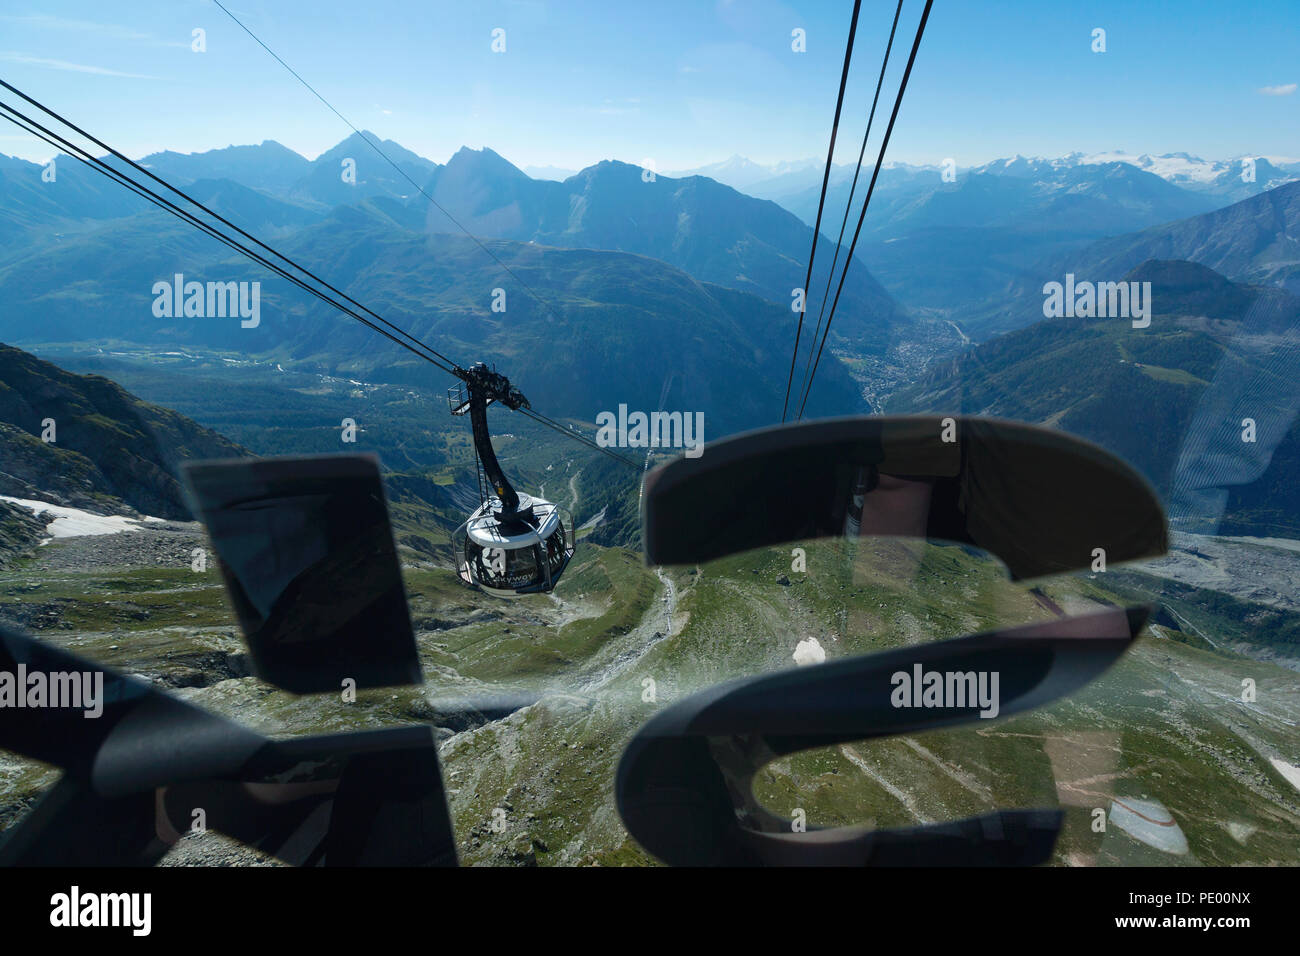 COURMAYEUR, Italia, Agosto 2: vista da una cabina di Skyway durante la salita sulla terrazza panoramica di Punta Helbronner in prossimità del Monte Bianco (Mont Blanc) Foto Stock